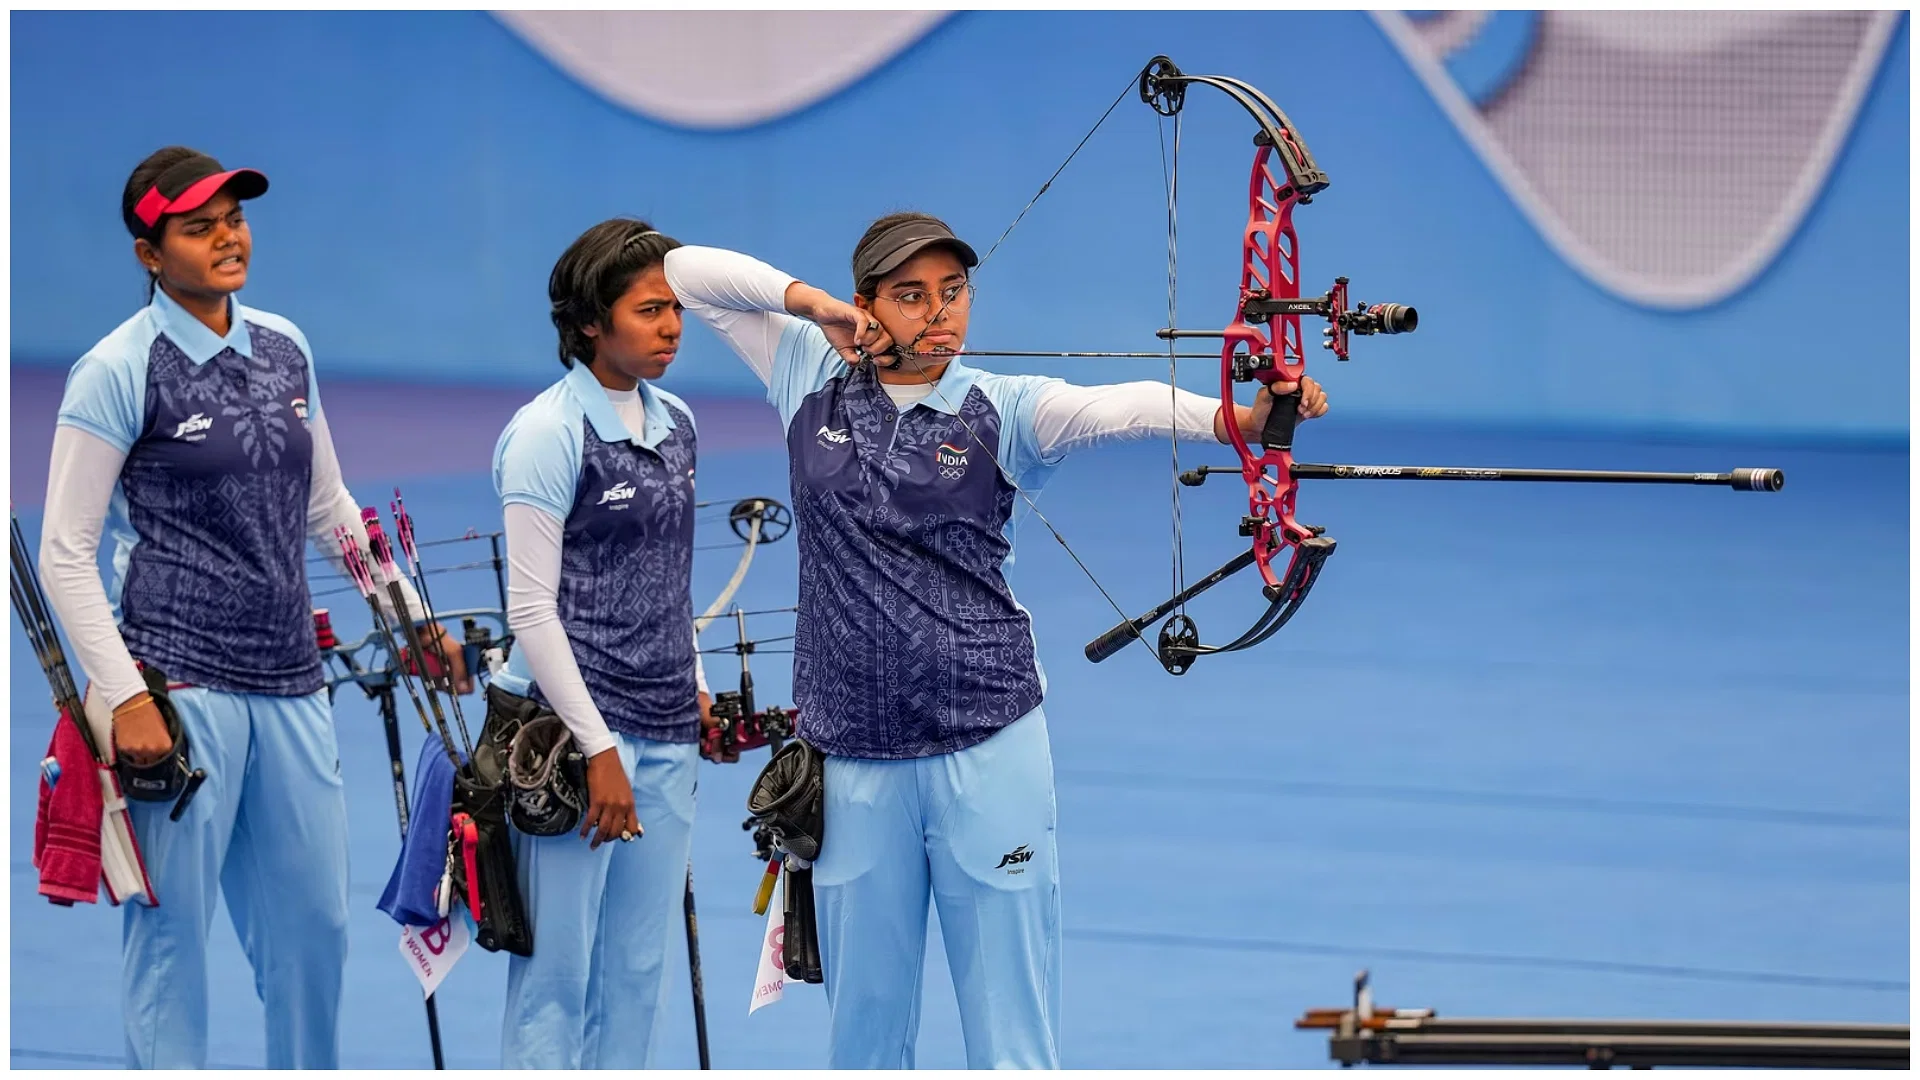 भारत की पुरुष और महिला तीरंदाजी टीमों ने ओलंपिक कोटा हासिल किये